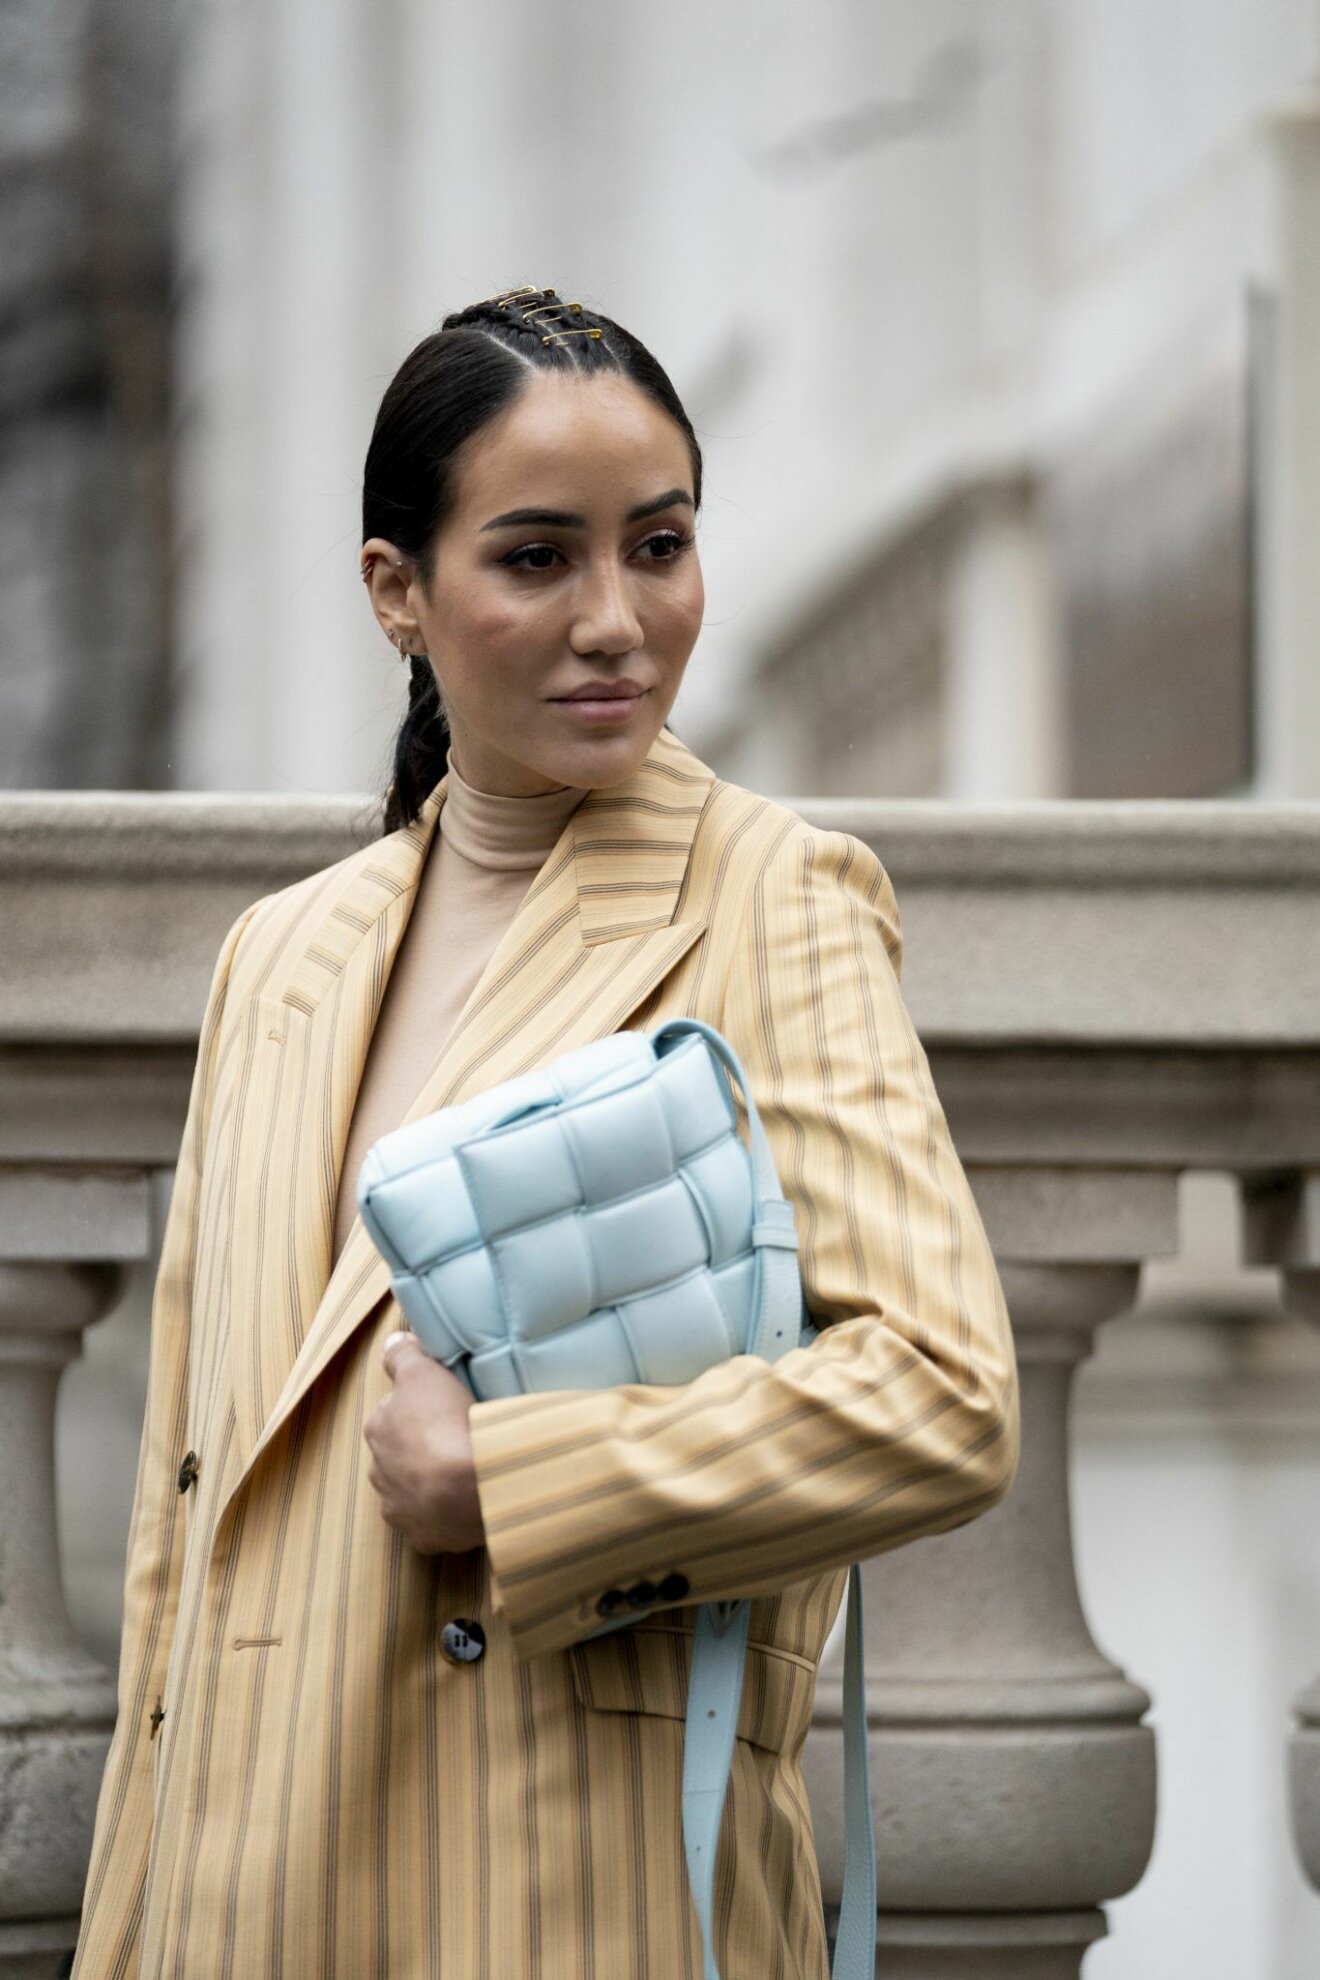 Ljusblå Bottega Veneta väska, streetstyle-look från New York Fashion Week 2020.